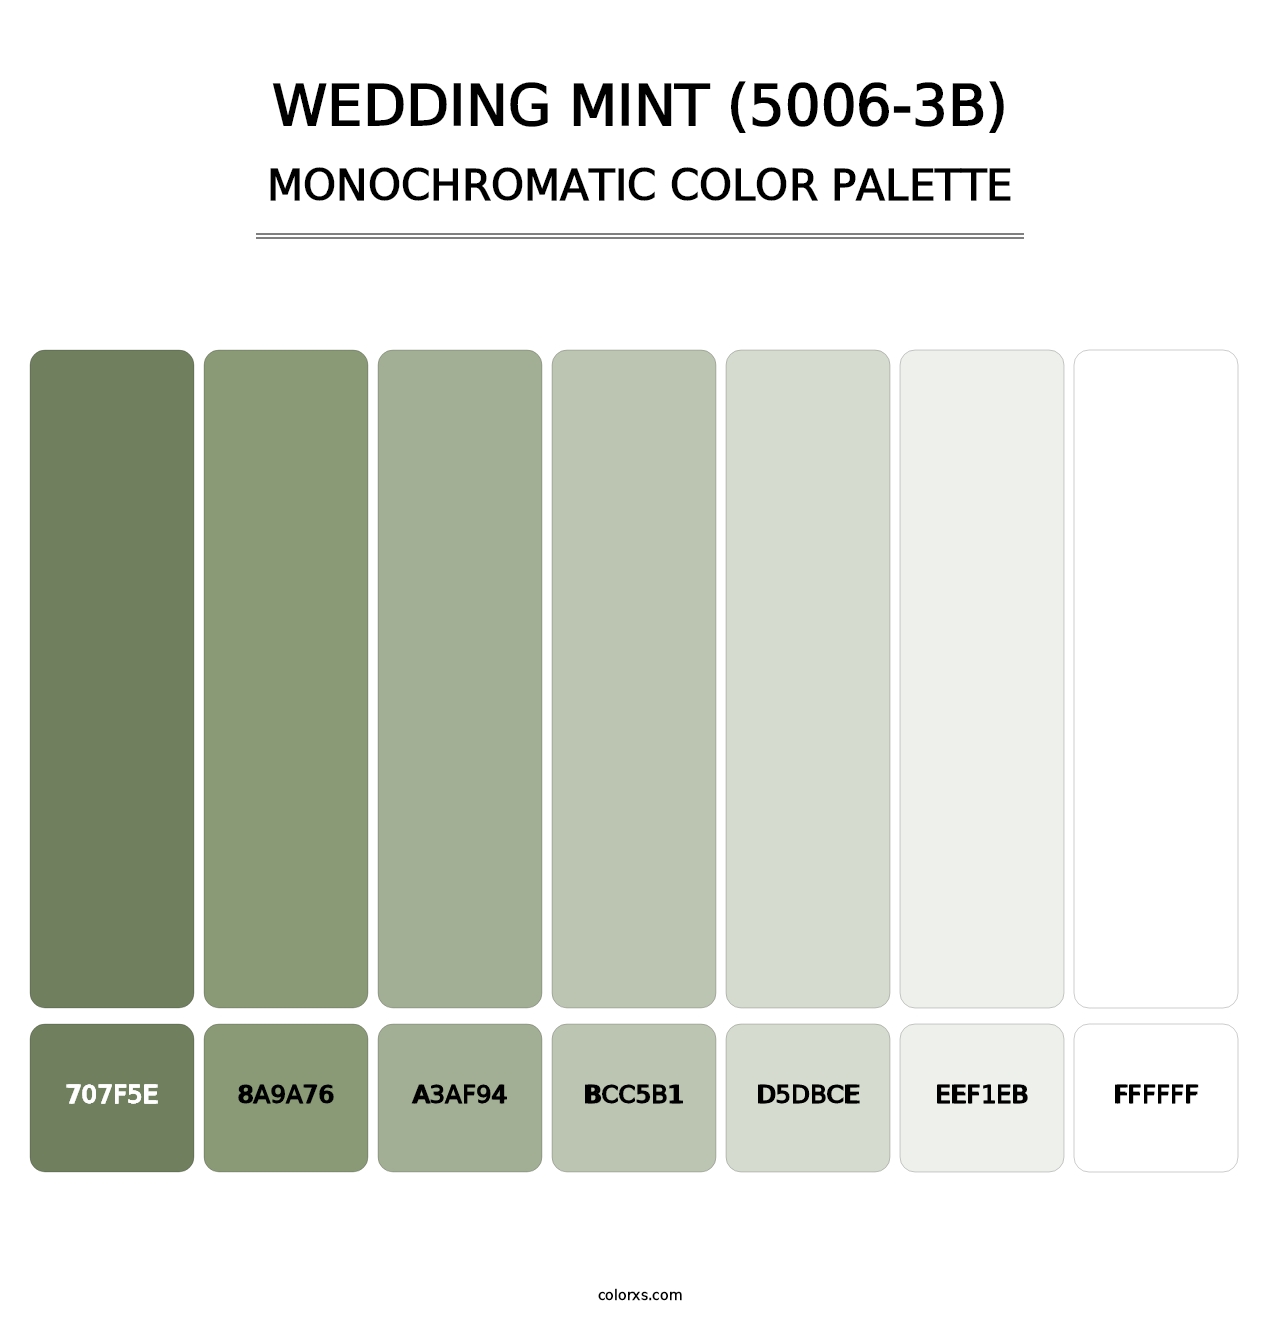 Wedding Mint (5006-3B) - Monochromatic Color Palette